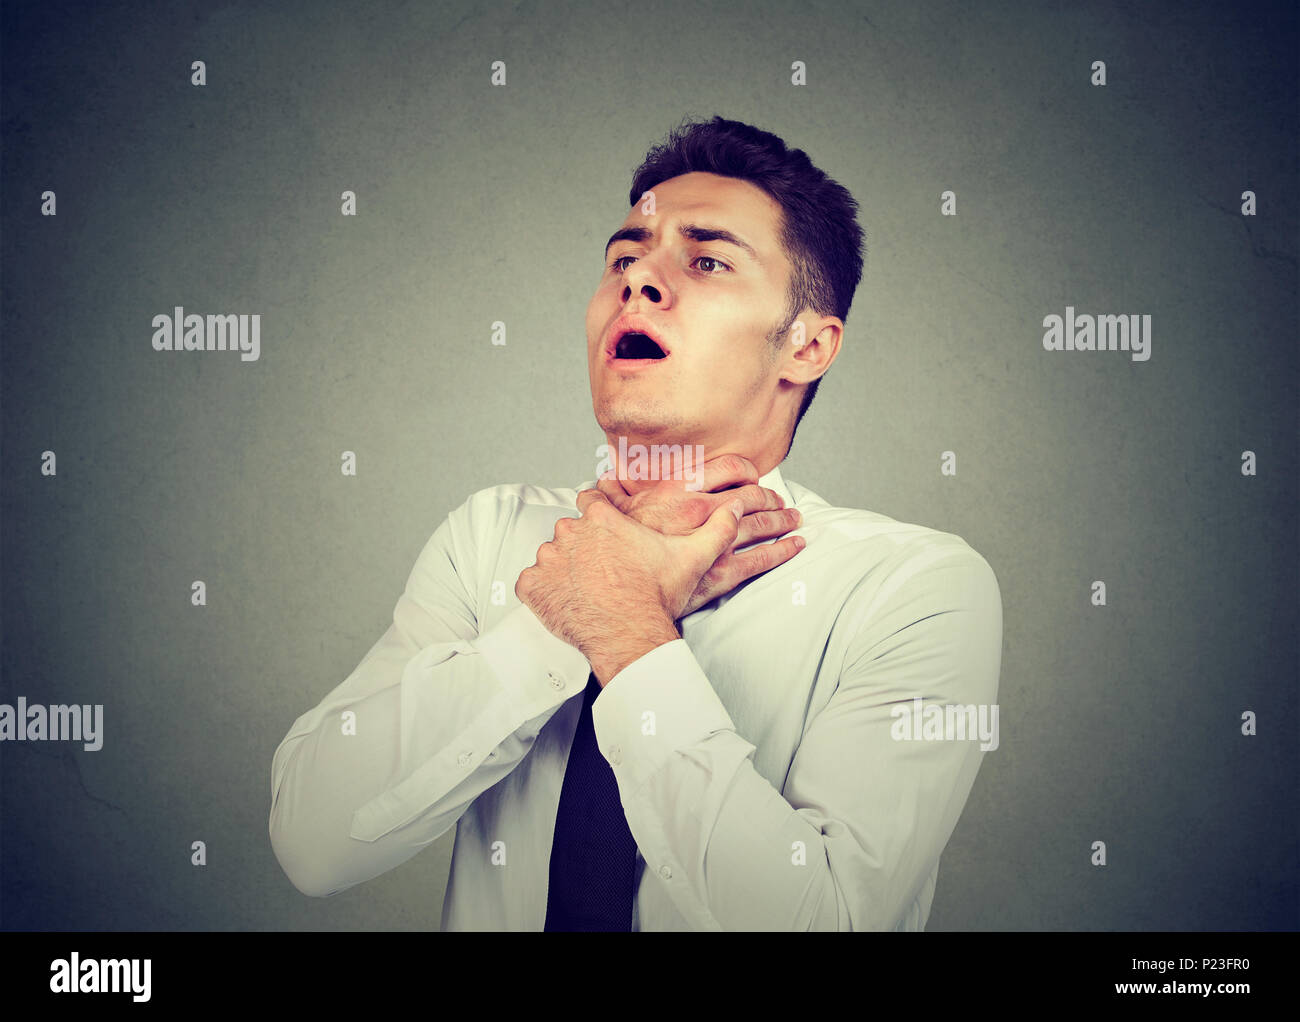 Giovane uomo avente attacchi di asma o parzializzando non respiro che soffre di problemi respiratori isolati su sfondo grigio Foto Stock